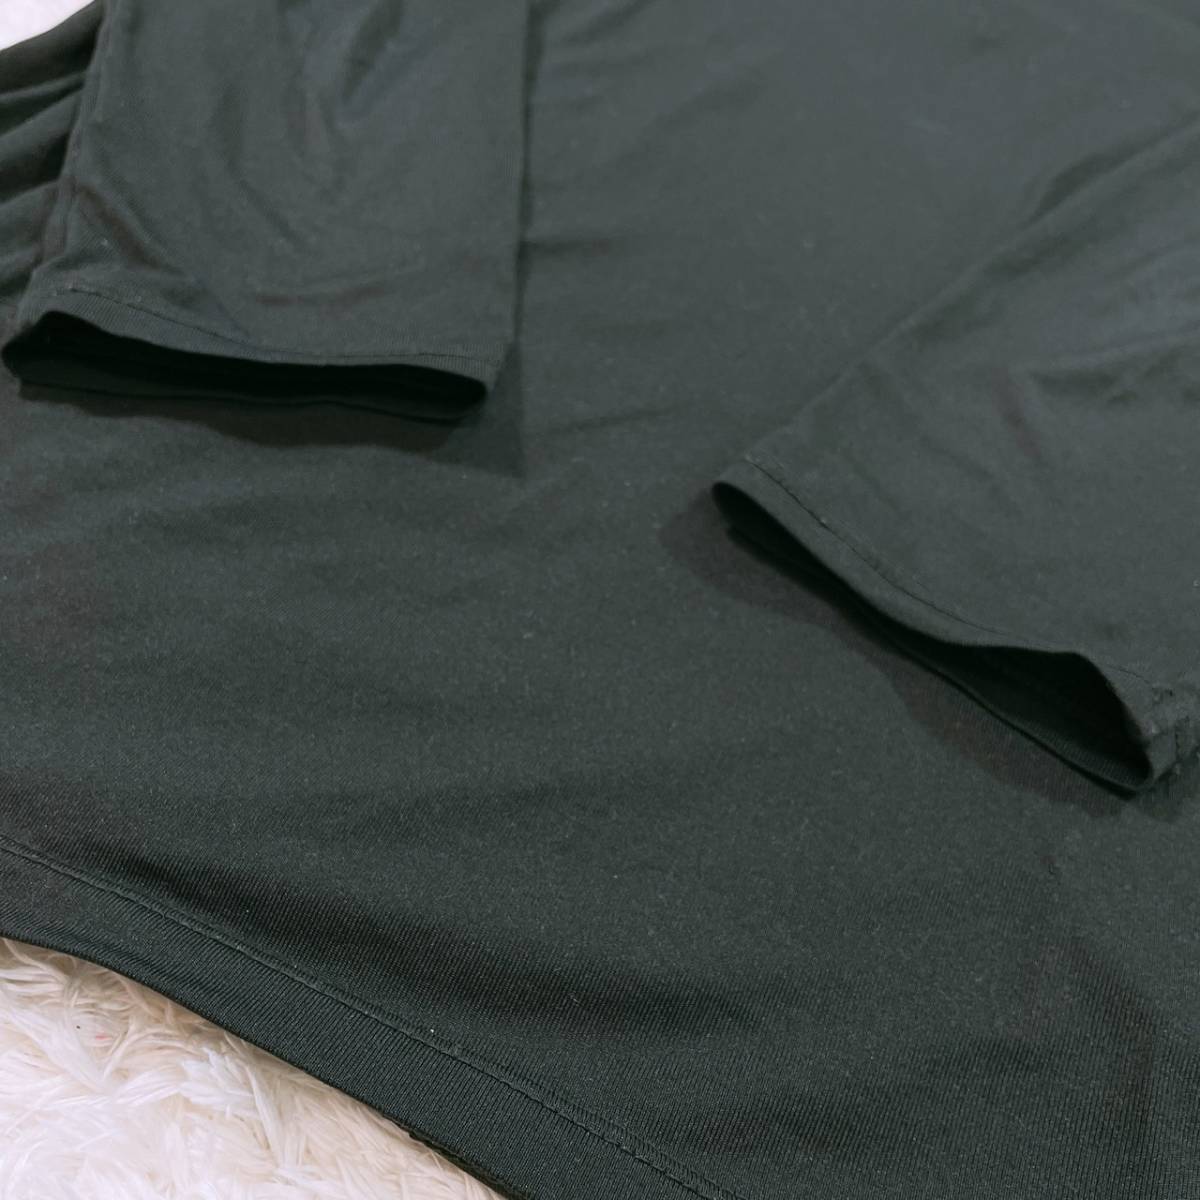 レディースL SHIMAMURA トップス シャツ 長袖シャツ カジュアルシャツ インナーシャツ ブラック Uネック シンプル しまむら 【26917】